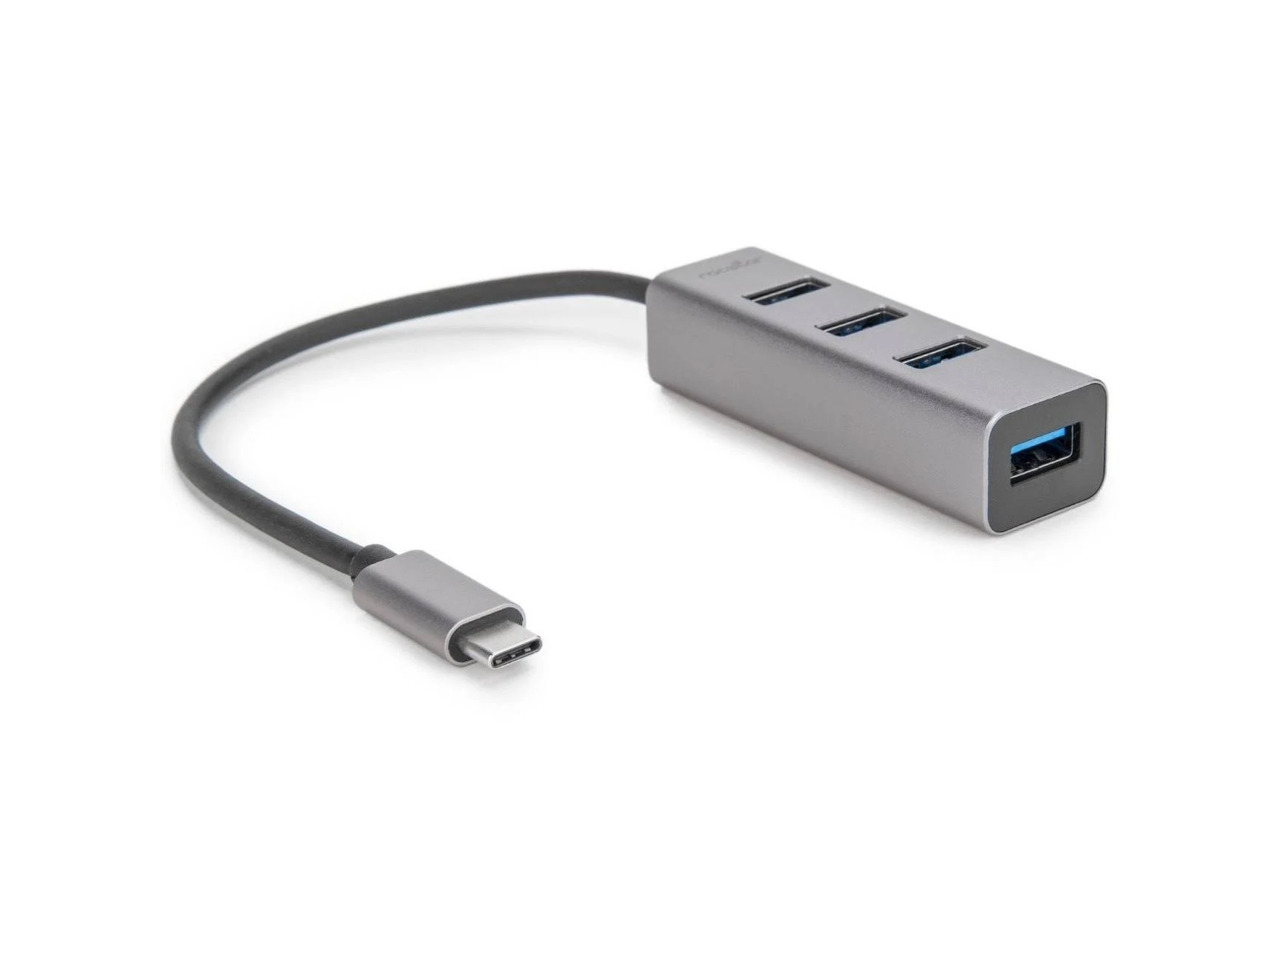 Rocstor Premium Portable 4 Port Aluminum Hub - USB-C to 4x USB-A Hub - USB 3.0